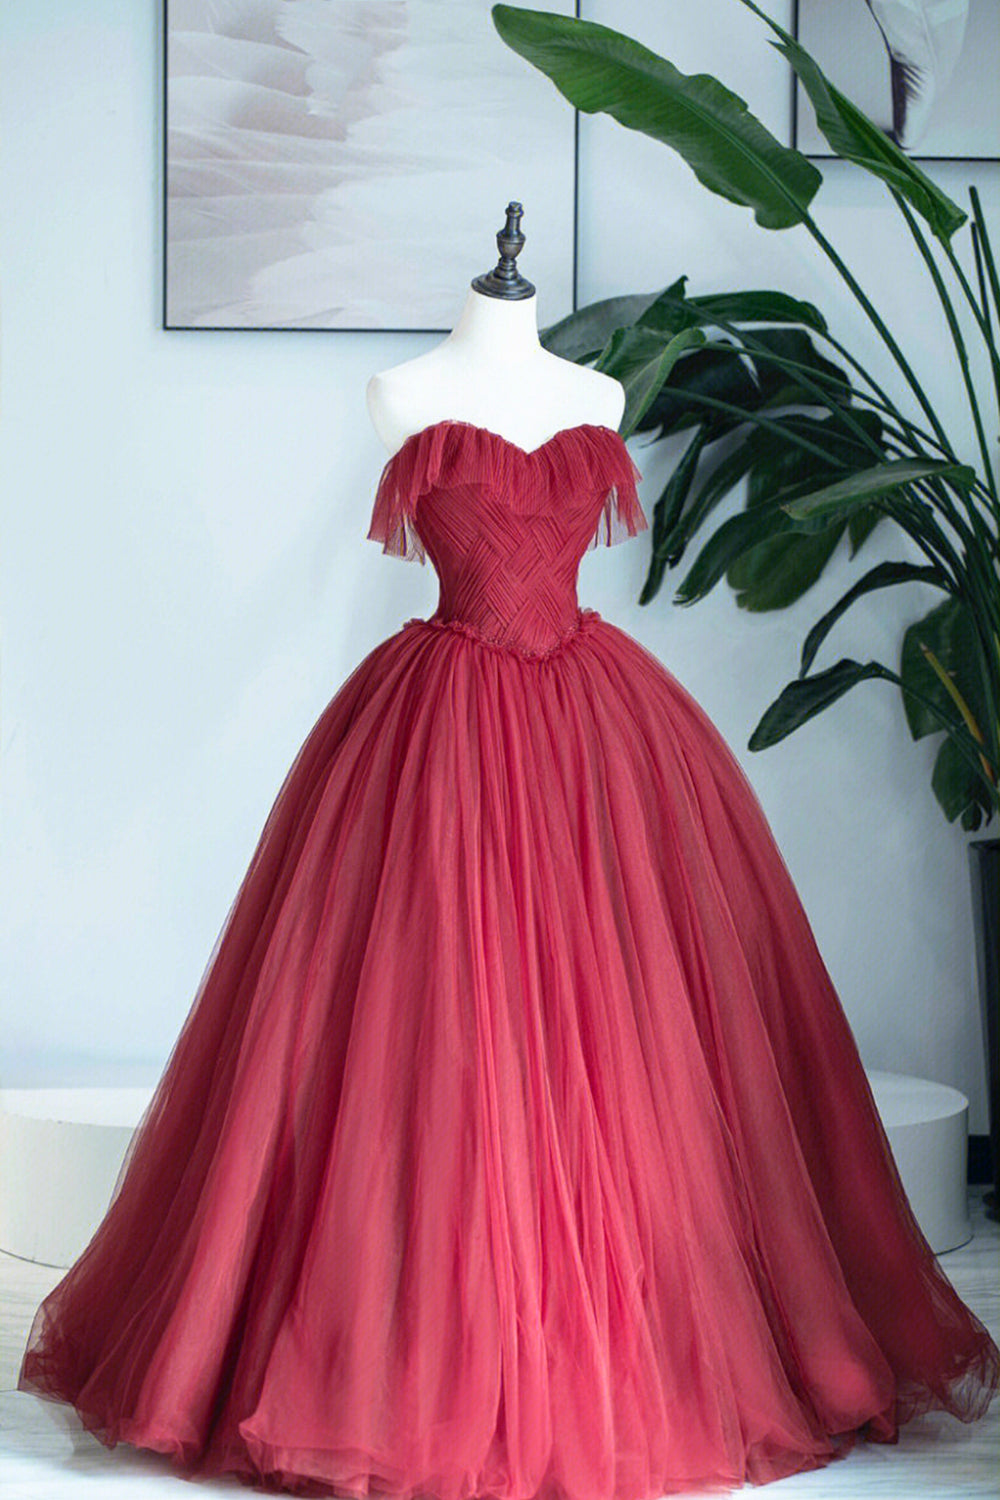 Burgundy Strapless Tulle Long Formal Dress, Sweetheart Neckline Evening Dress